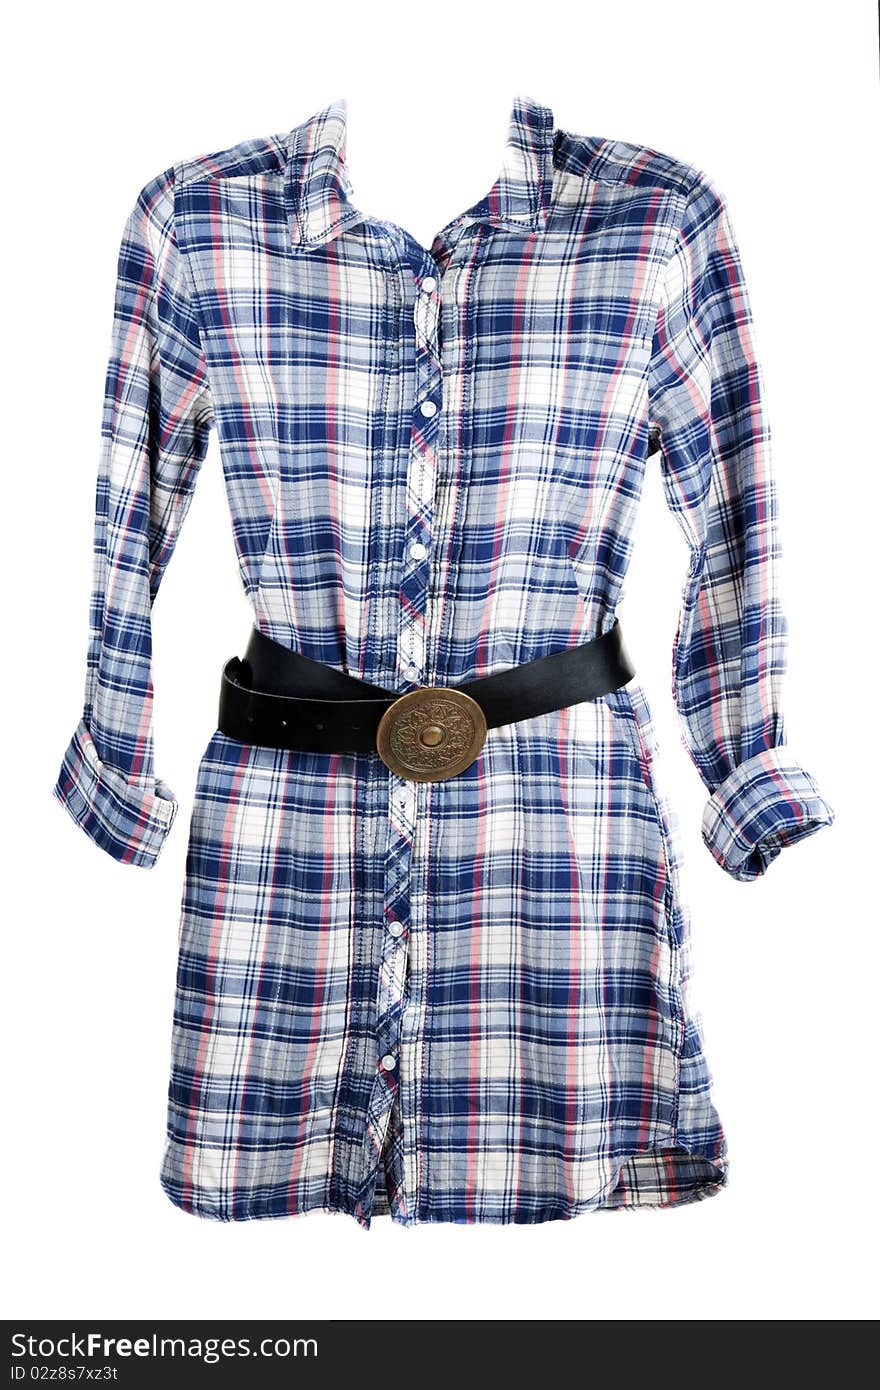 Feminine plaid shirt and leather belt on white background